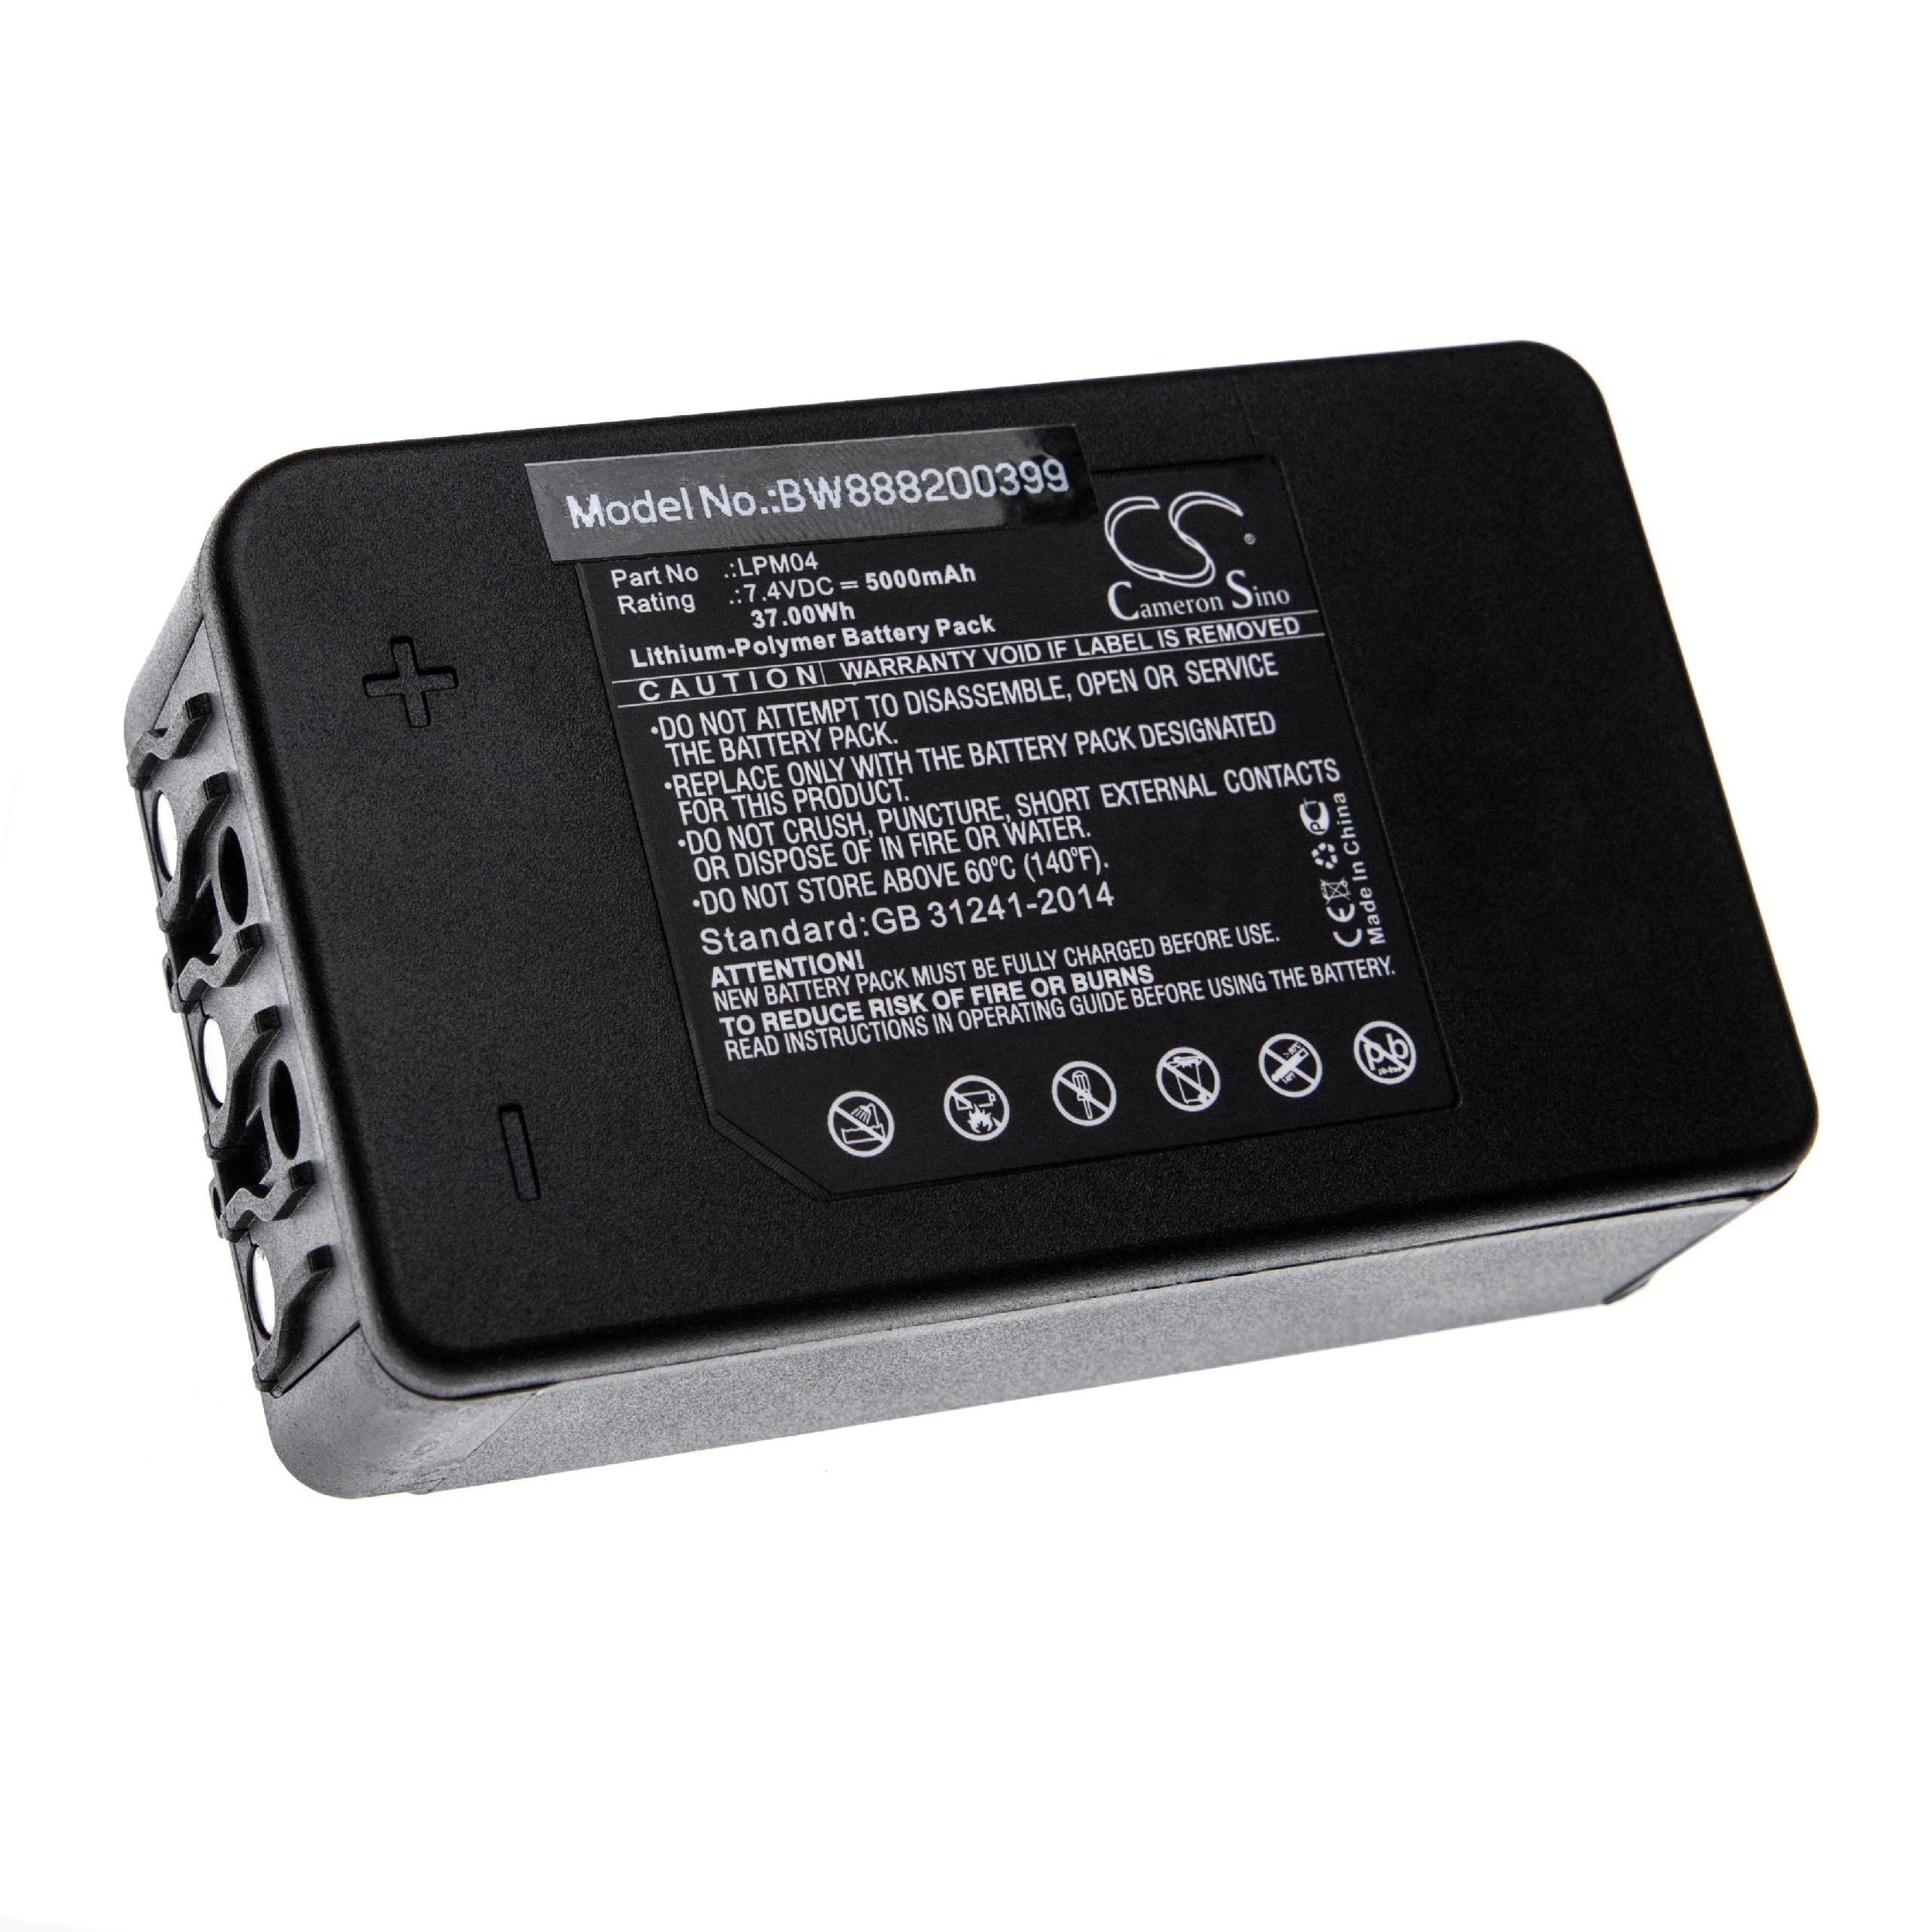 Batería reemplaza Autec R0BATT00E12A0, LPM04 para mando distancia industrial Autec - 5000 mAh 7,4 V Li-poli